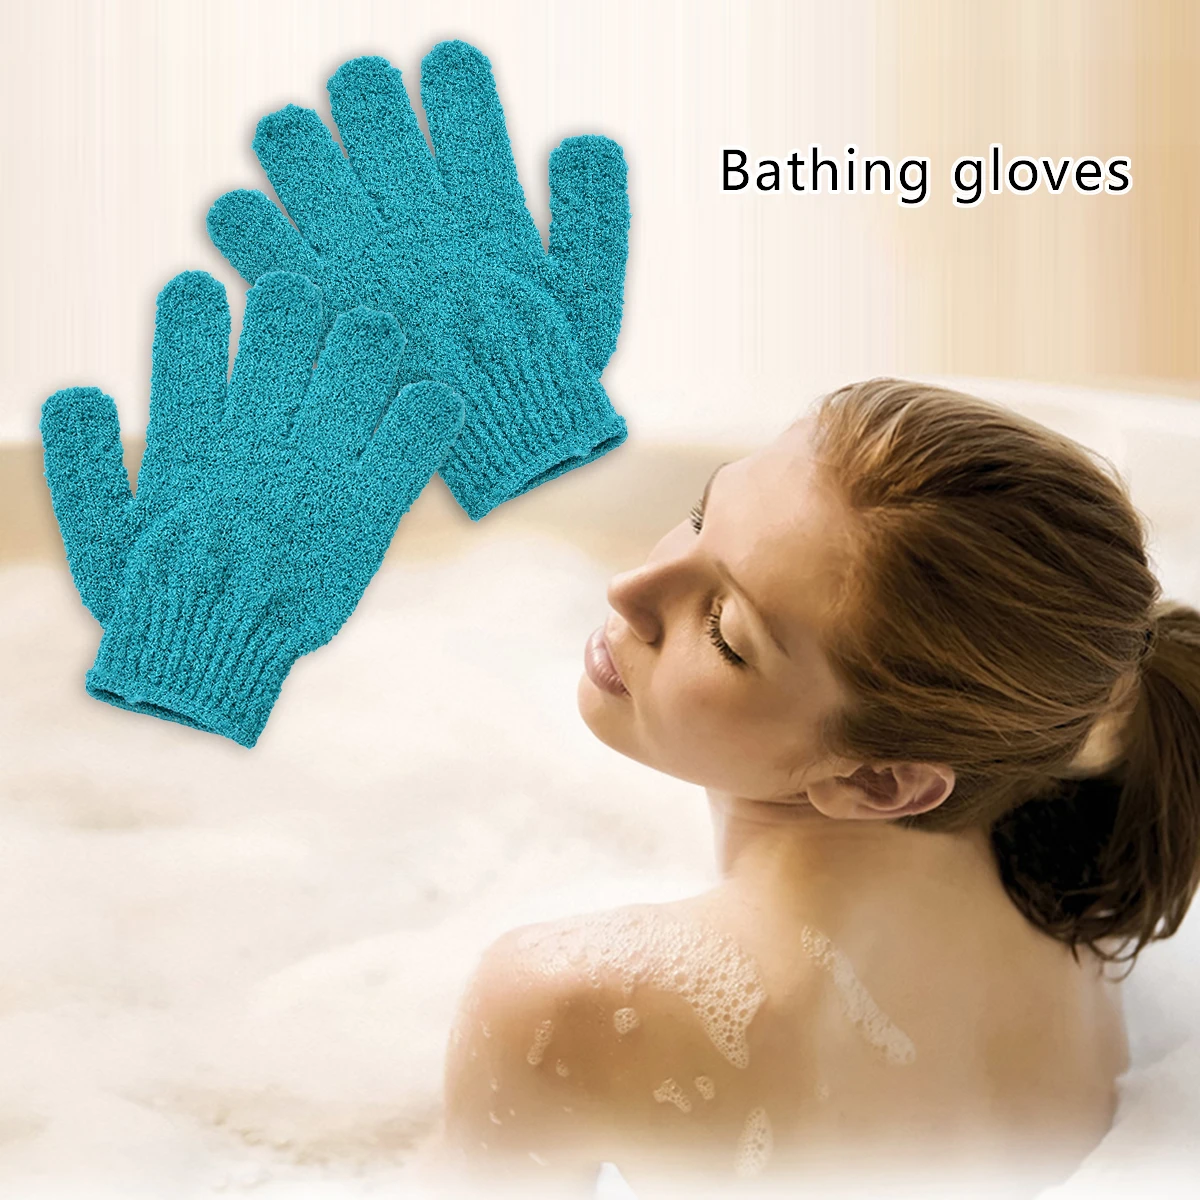 

Dead Skin Removal Exfoliator High Quality Exfoliating Gloves Color Random Mitt Bath Shower Scrub Tan